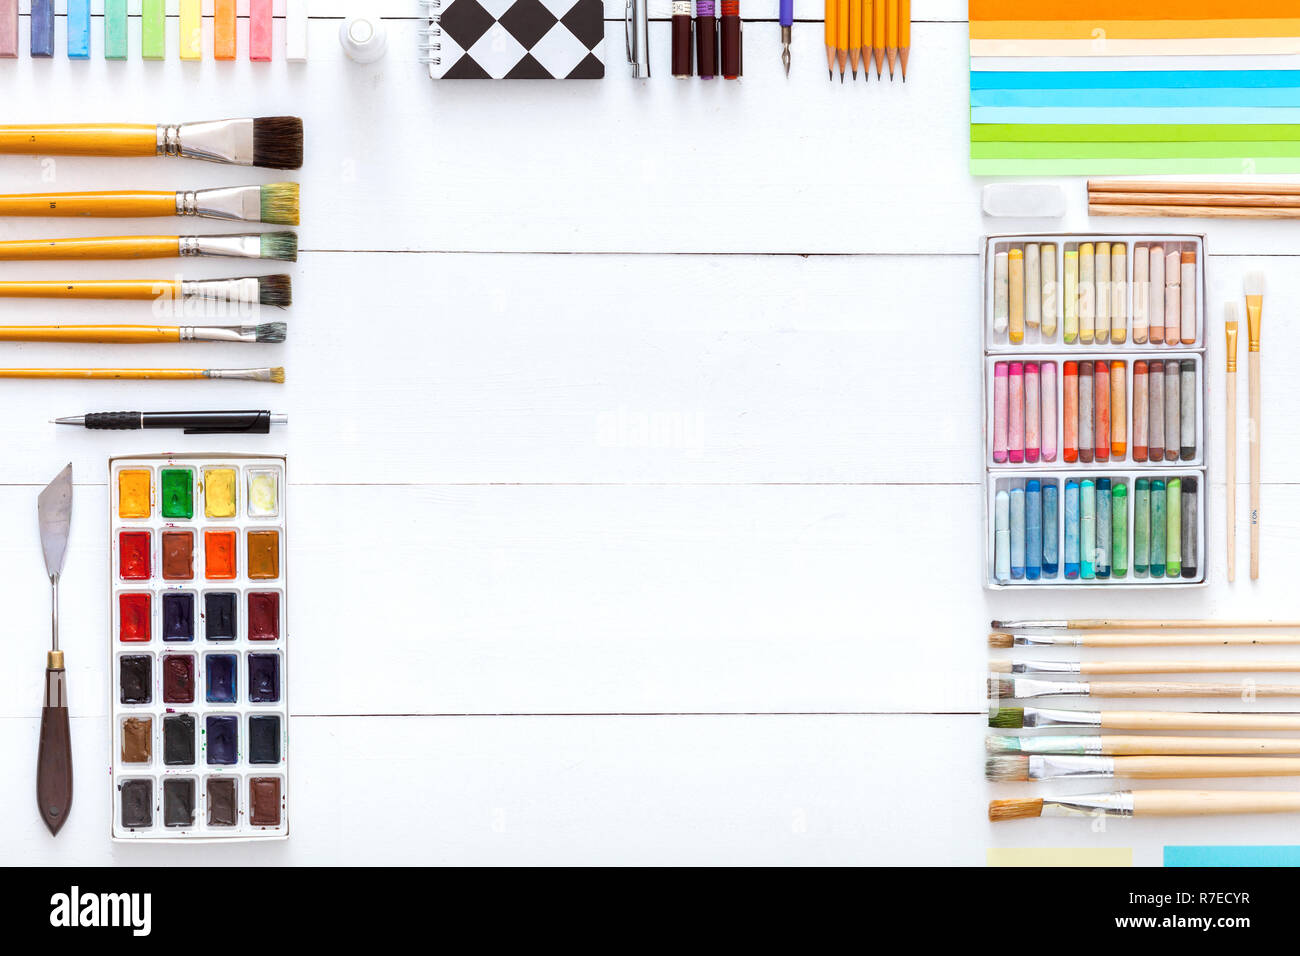 Outils de création d'un bureau avec fournitures de dessin peinture, pinceaux peintures colorées craies crayons et accessoires pour l'école d'art sur bois blanc ta Banque D'Images